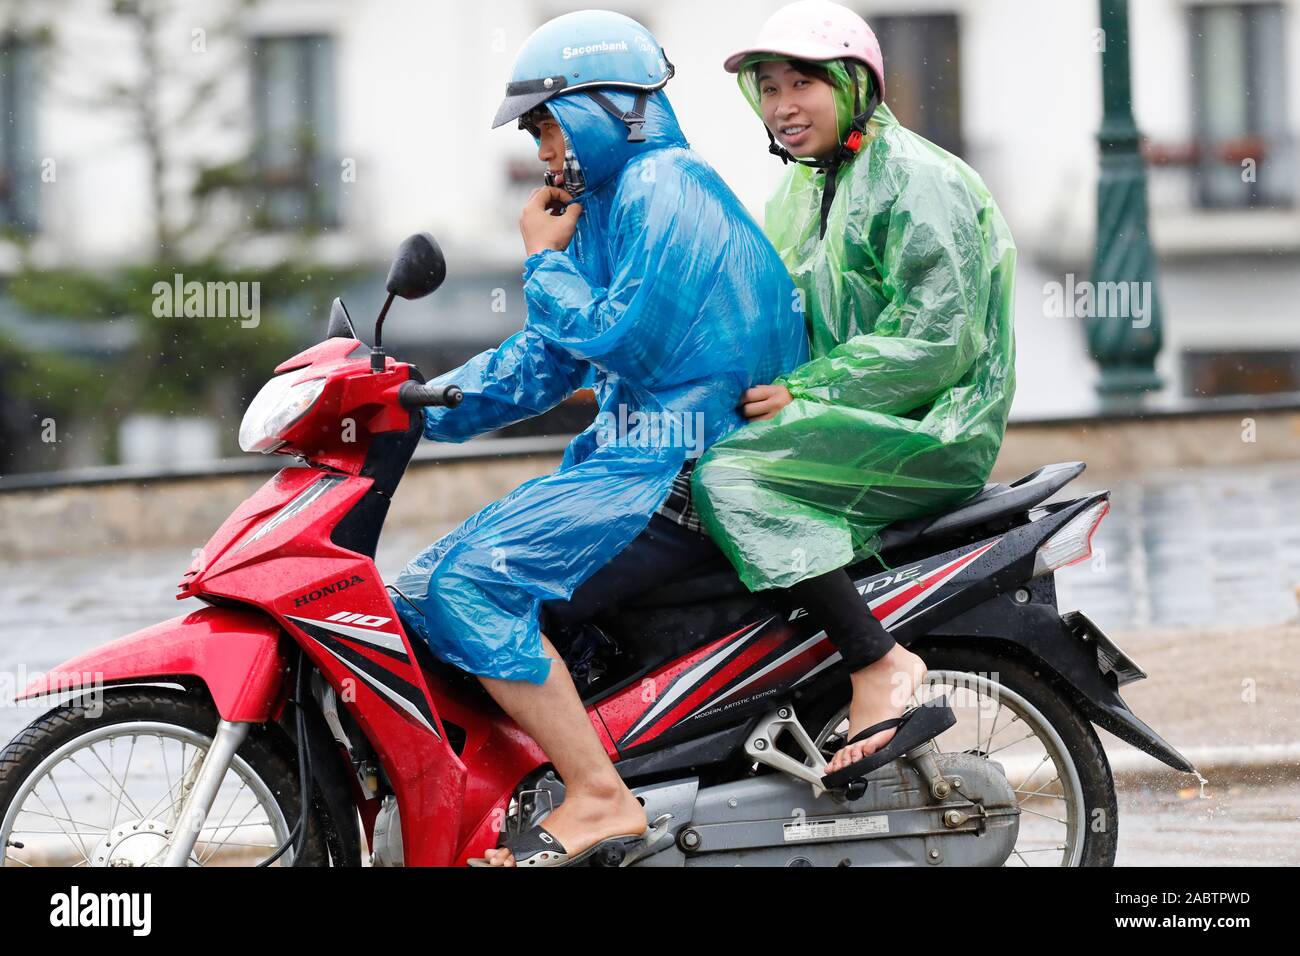 Monsun oder Regenzeit. Motorrad auf der Straße. Sapa. Vietnam. Stockfoto